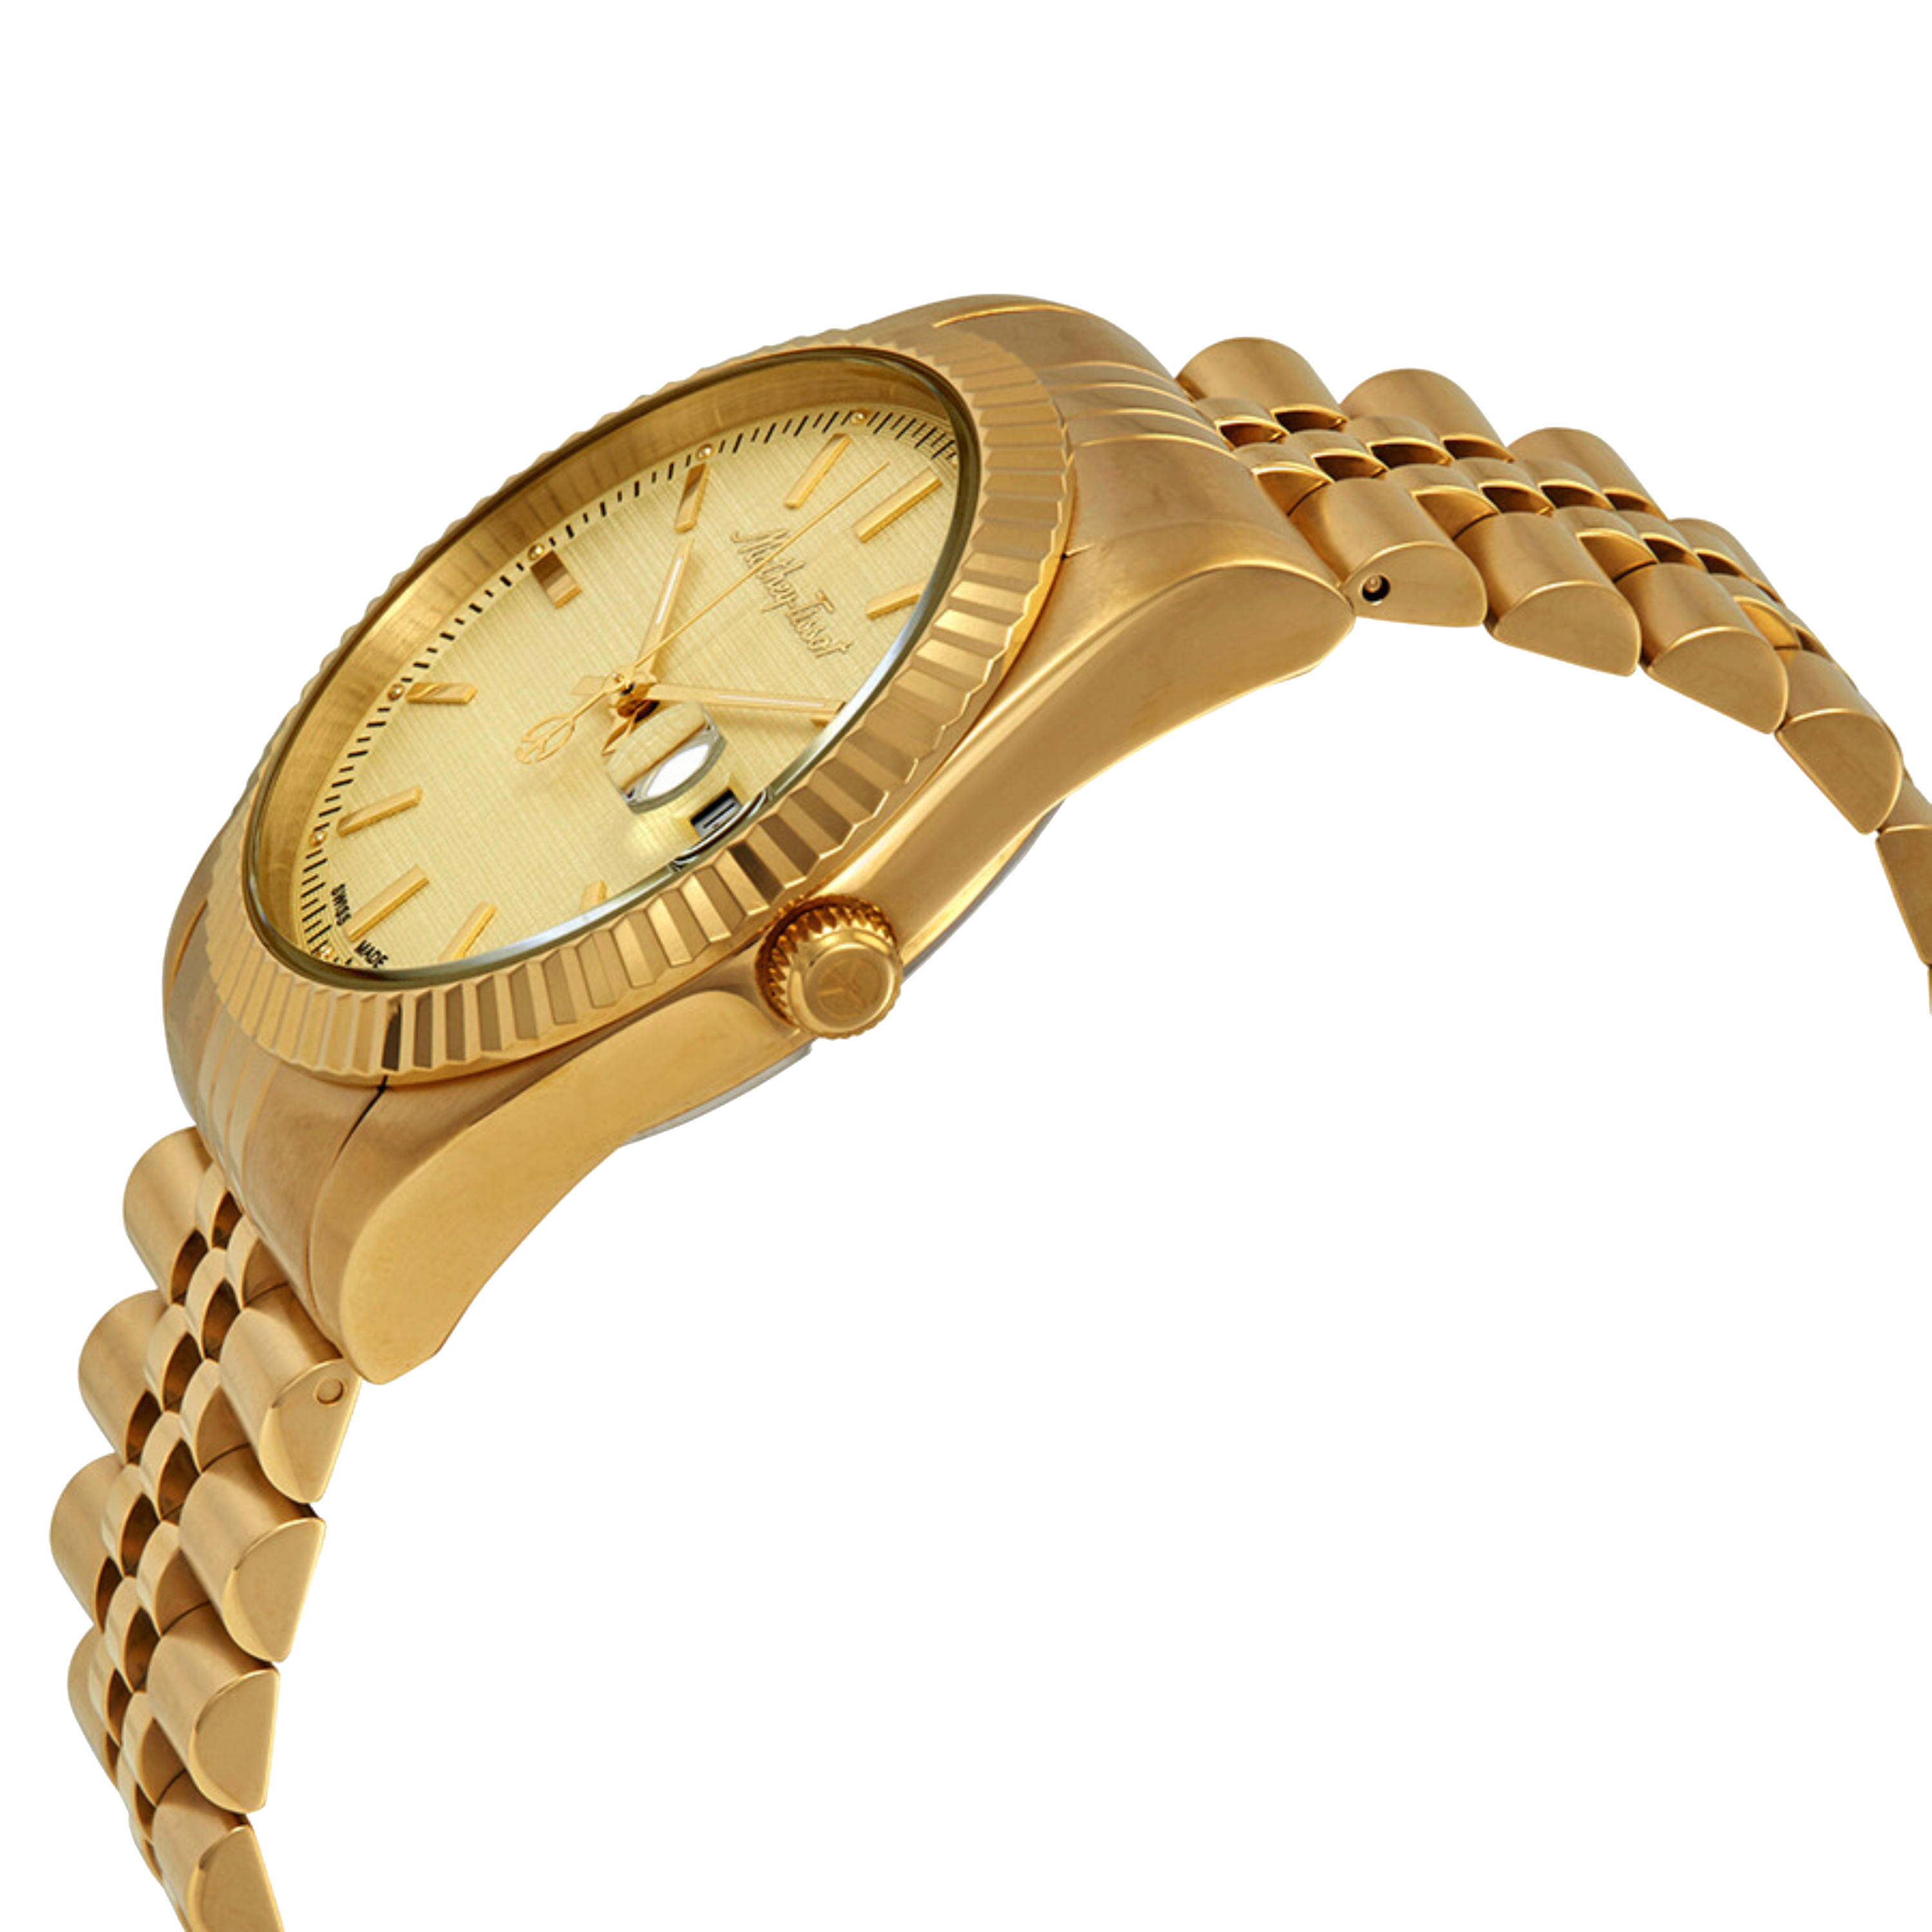 שעון יד לגבר Mathey Tissot H810PDI 40mm צבע זהב/תאריך - אחריות לשנתיים